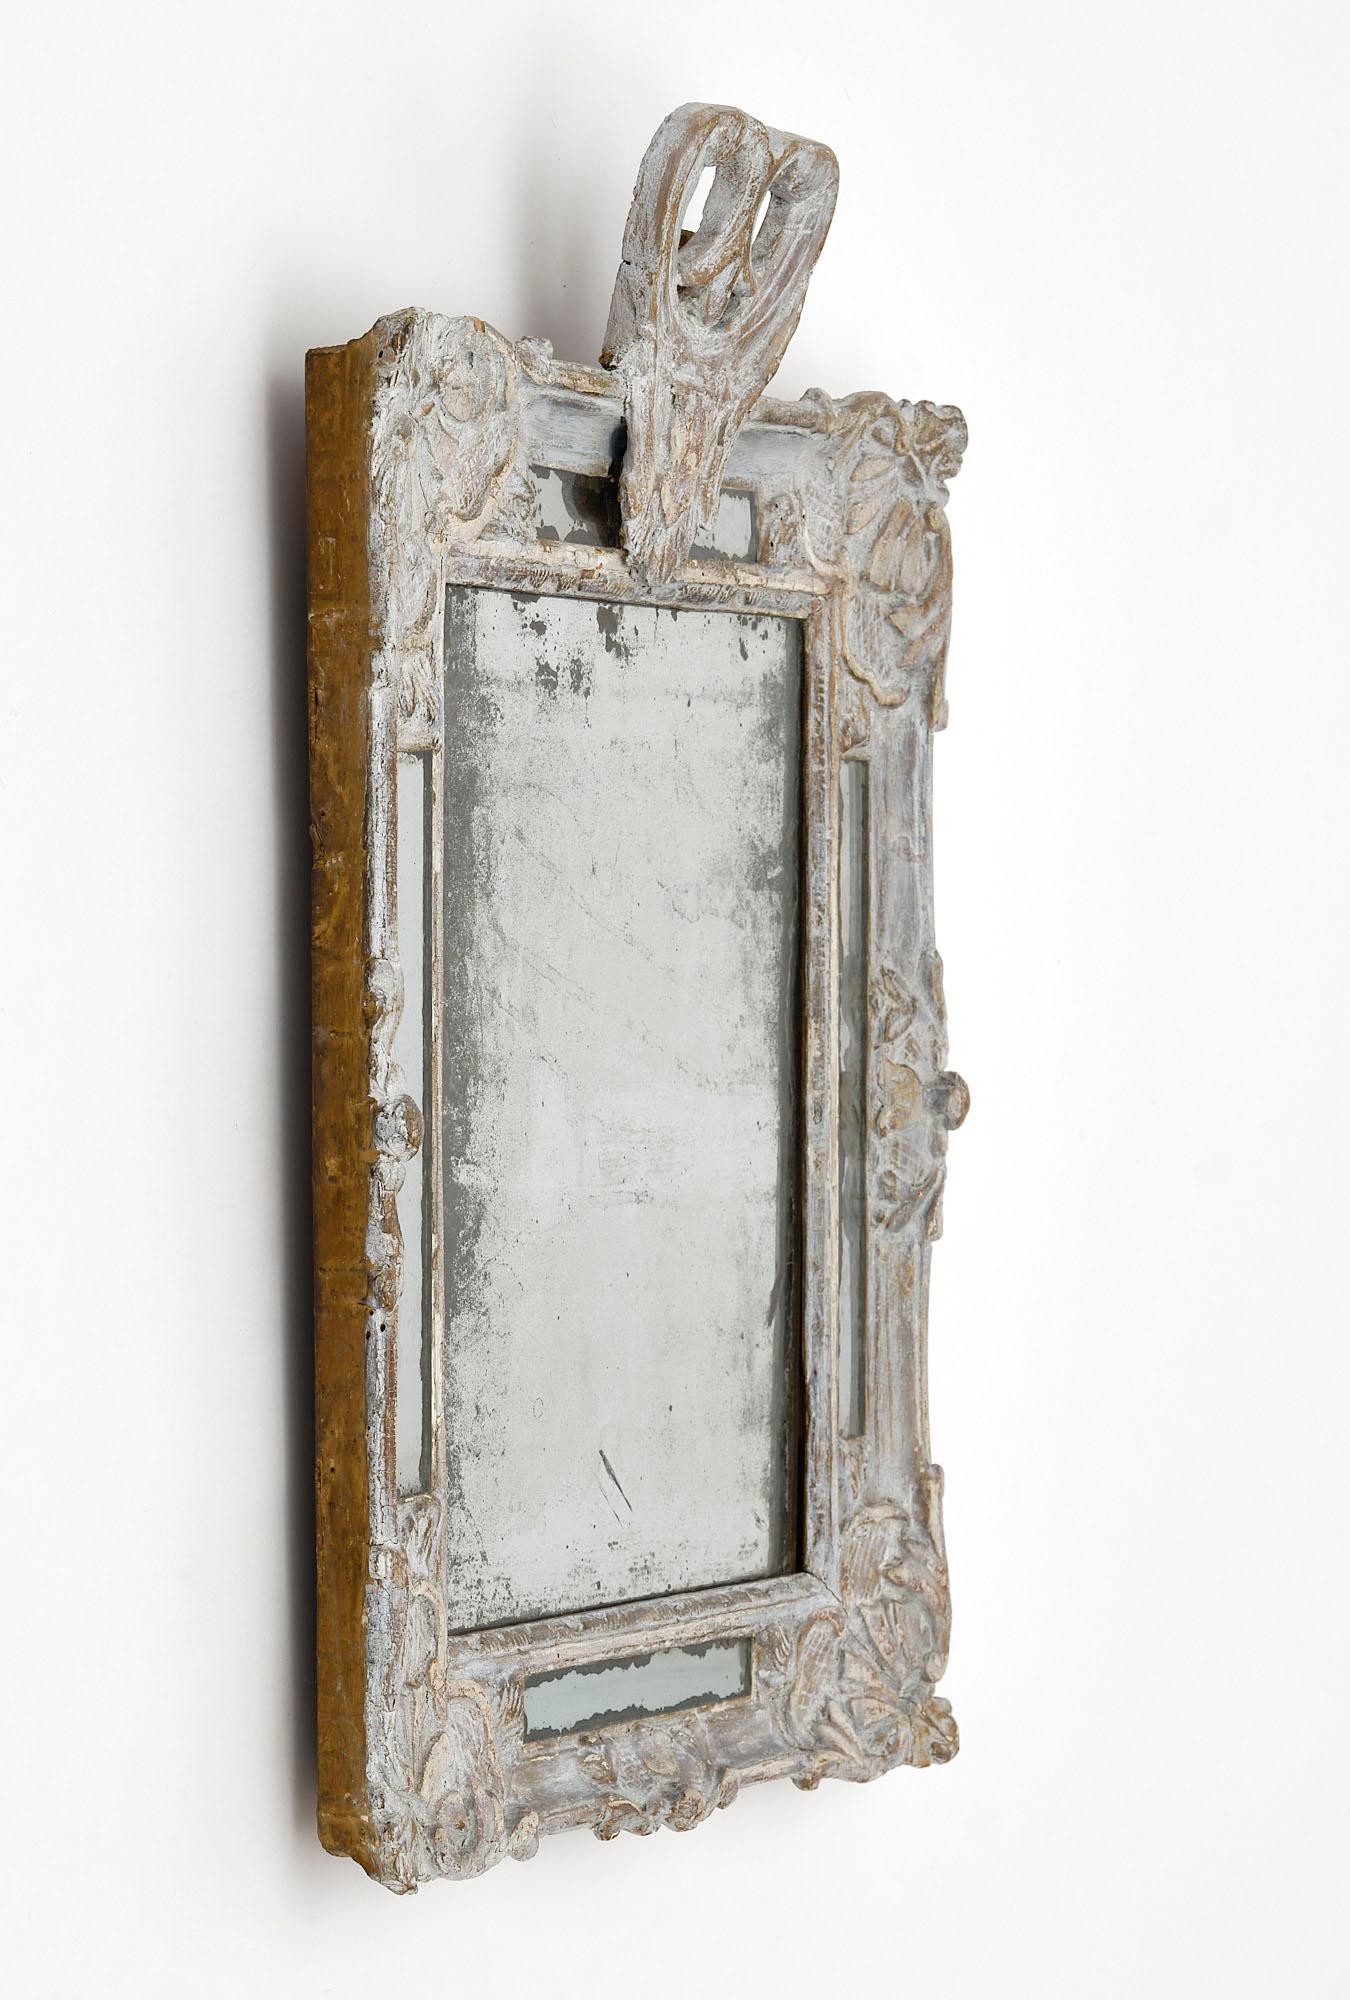 Miroir français ancien avec un cadre en bois de style Regency sculpté à la main. La finition et la peinture sont entièrement d'origine. Nous adorons la patine et le miroir au mercure d'origine.